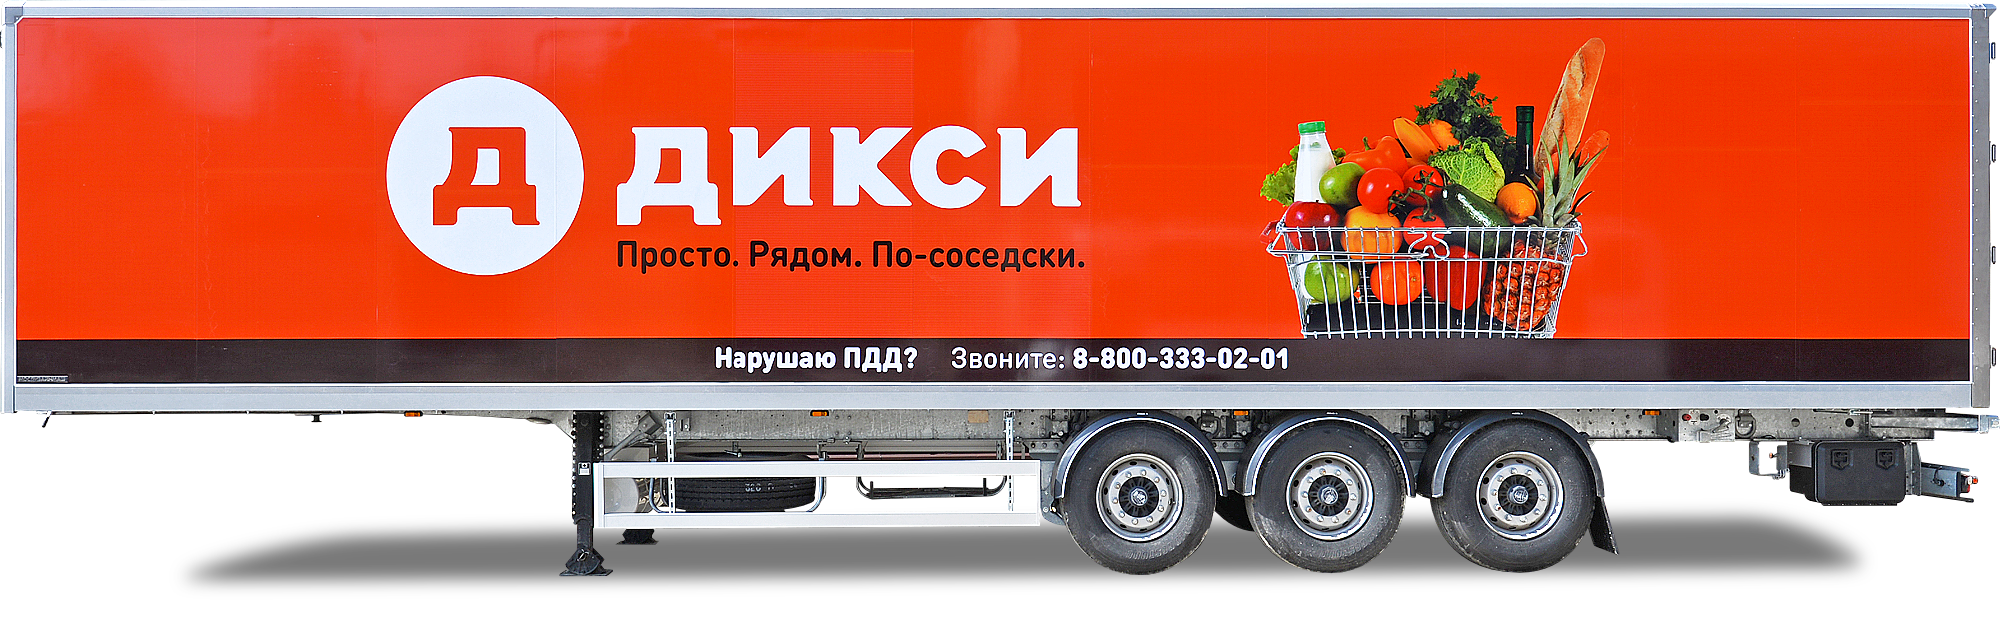 Dixy supermarket chain Decopan Commercial Vehicle (Ticari Araç) FRP caravan laminate